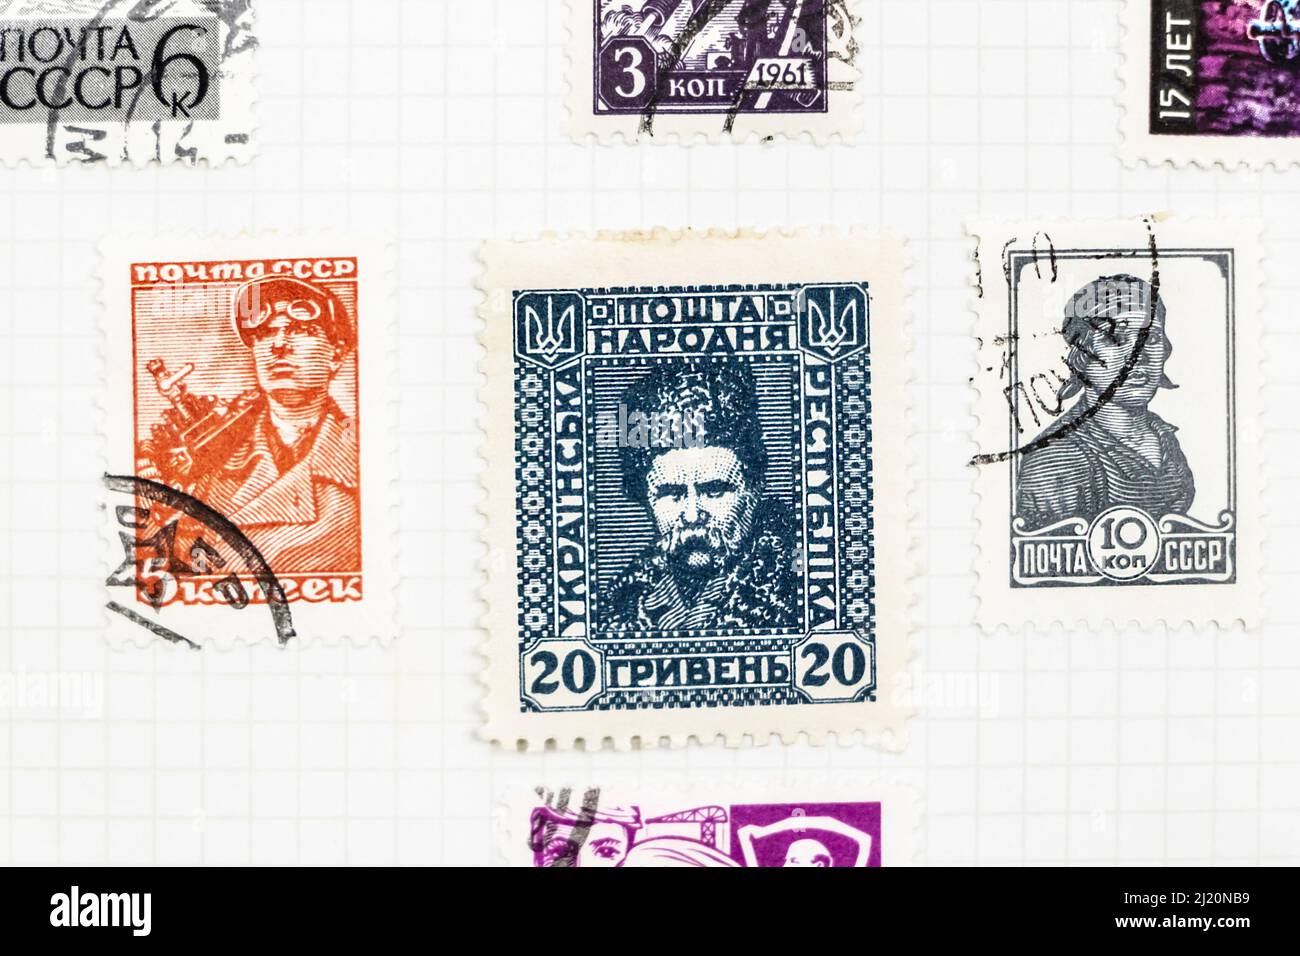 Russie timbres d'époque CCCP dans une collection d'albums de timbres Banque D'Images